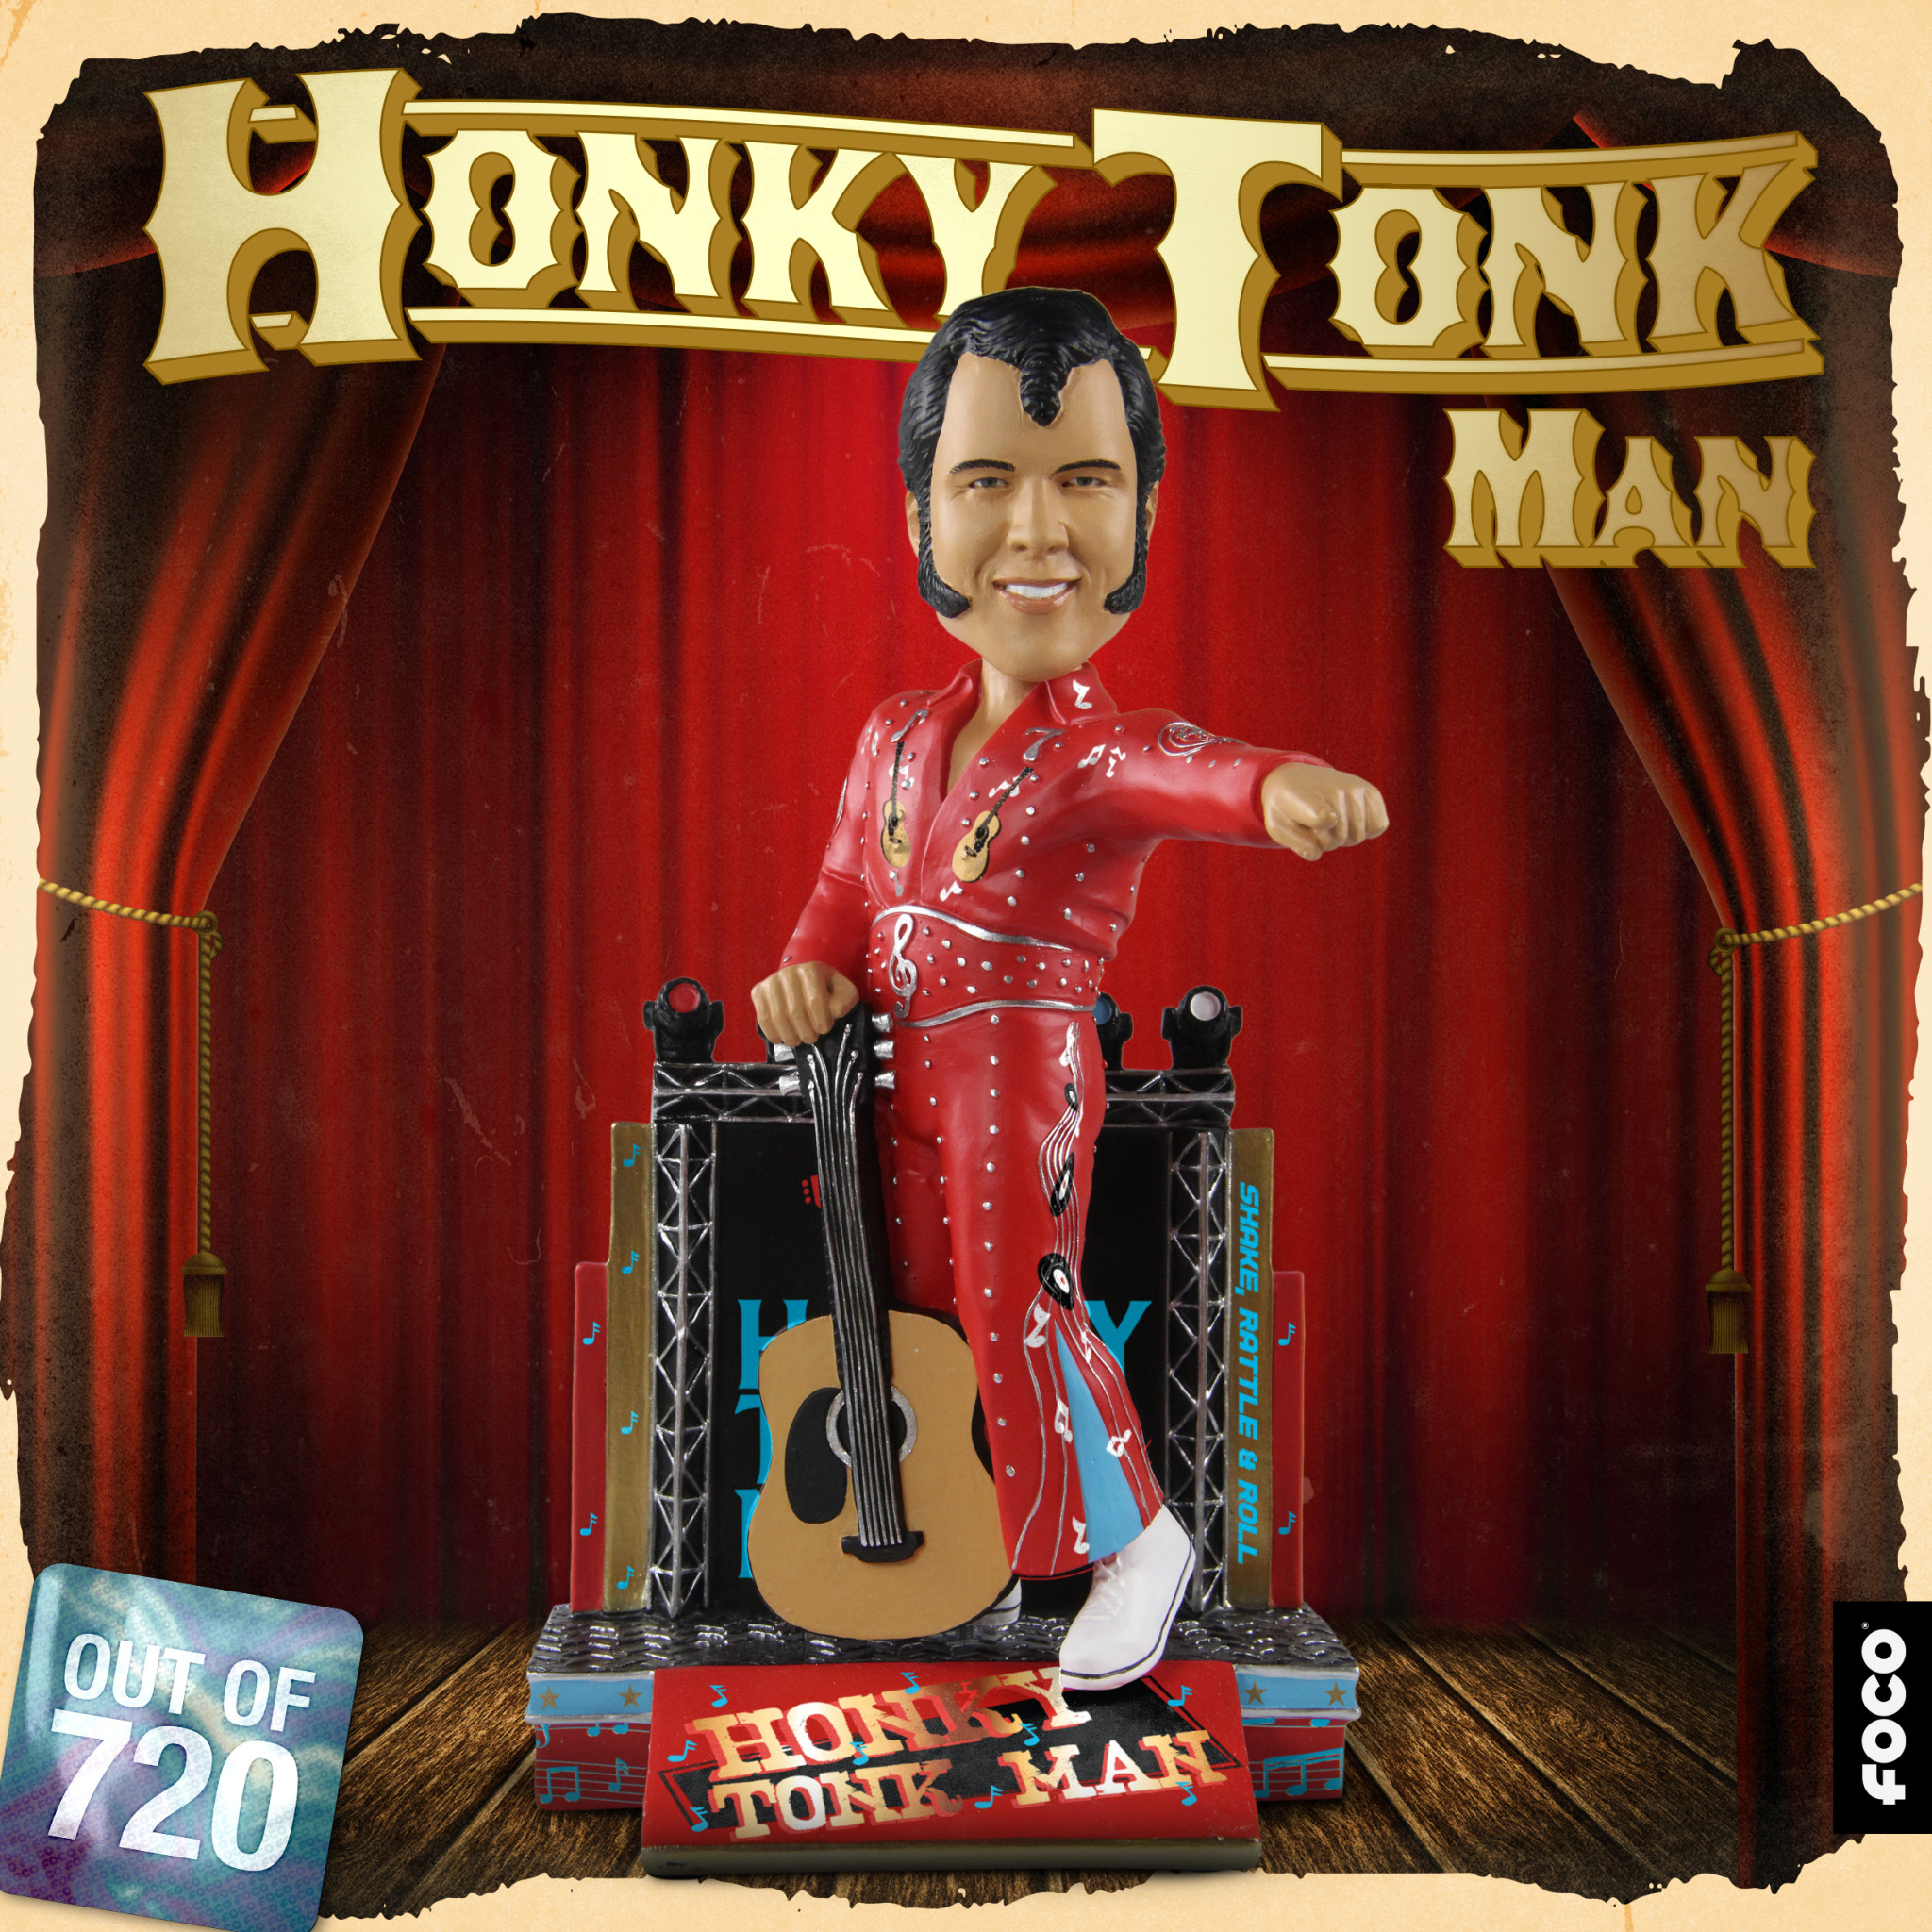 Honkey Tonk Man